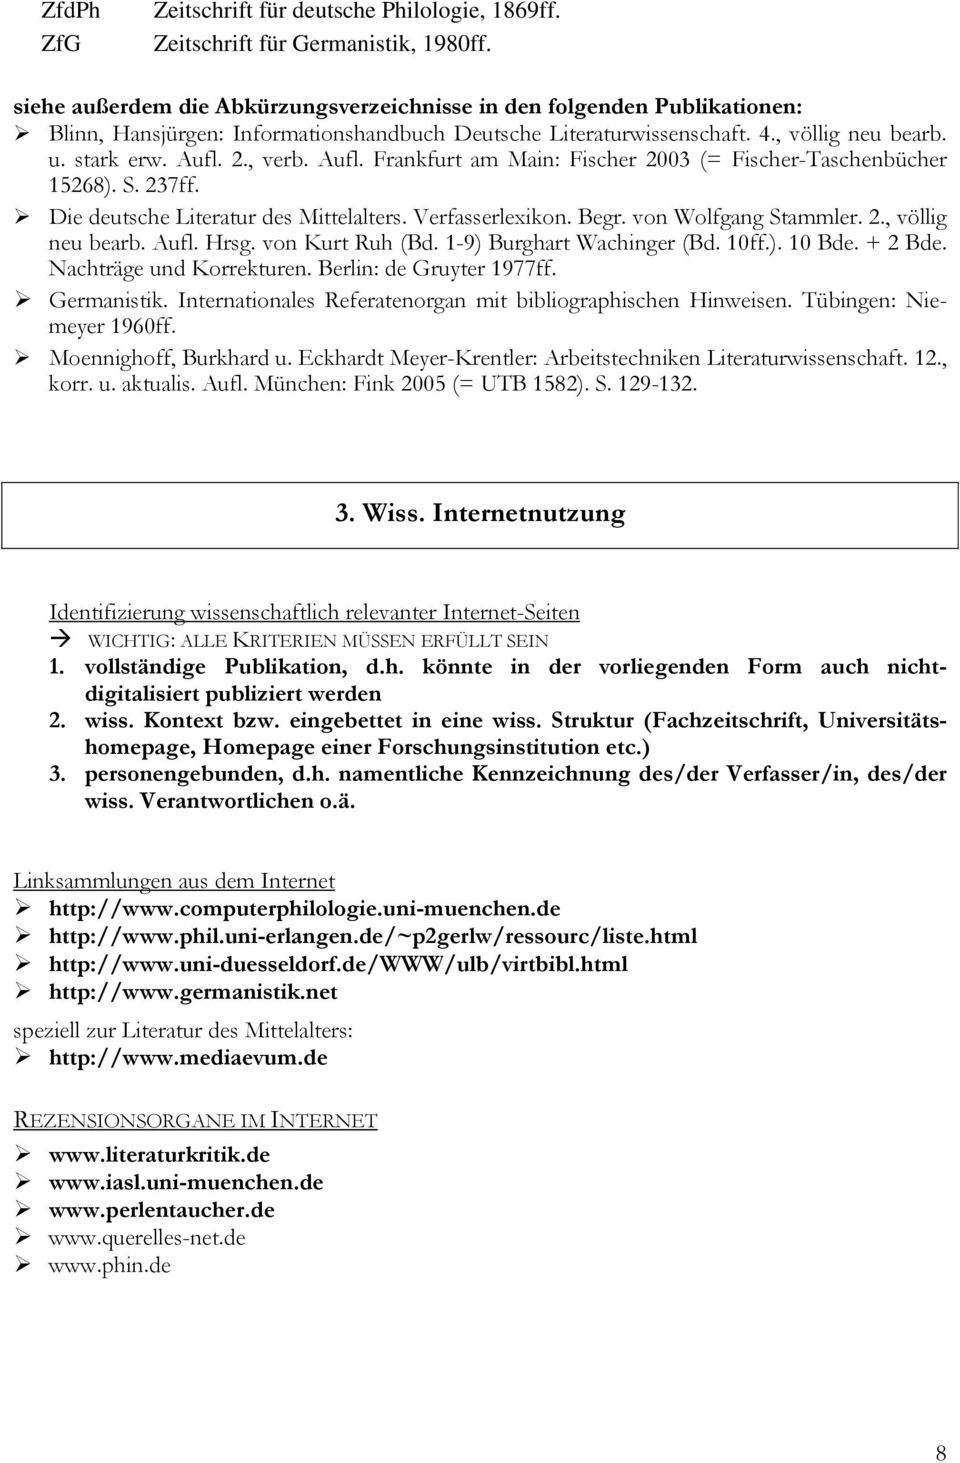 Aufl. Frankfurt am Main: Fischer 2003 (= Fischer-Taschenbücher 15268). S. 237ff. Die deutsche Literatur des Mittelalters. Verfasserlexikon. Begr. von Wolfgang Stammler. 2., völlig neu bearb. Aufl.